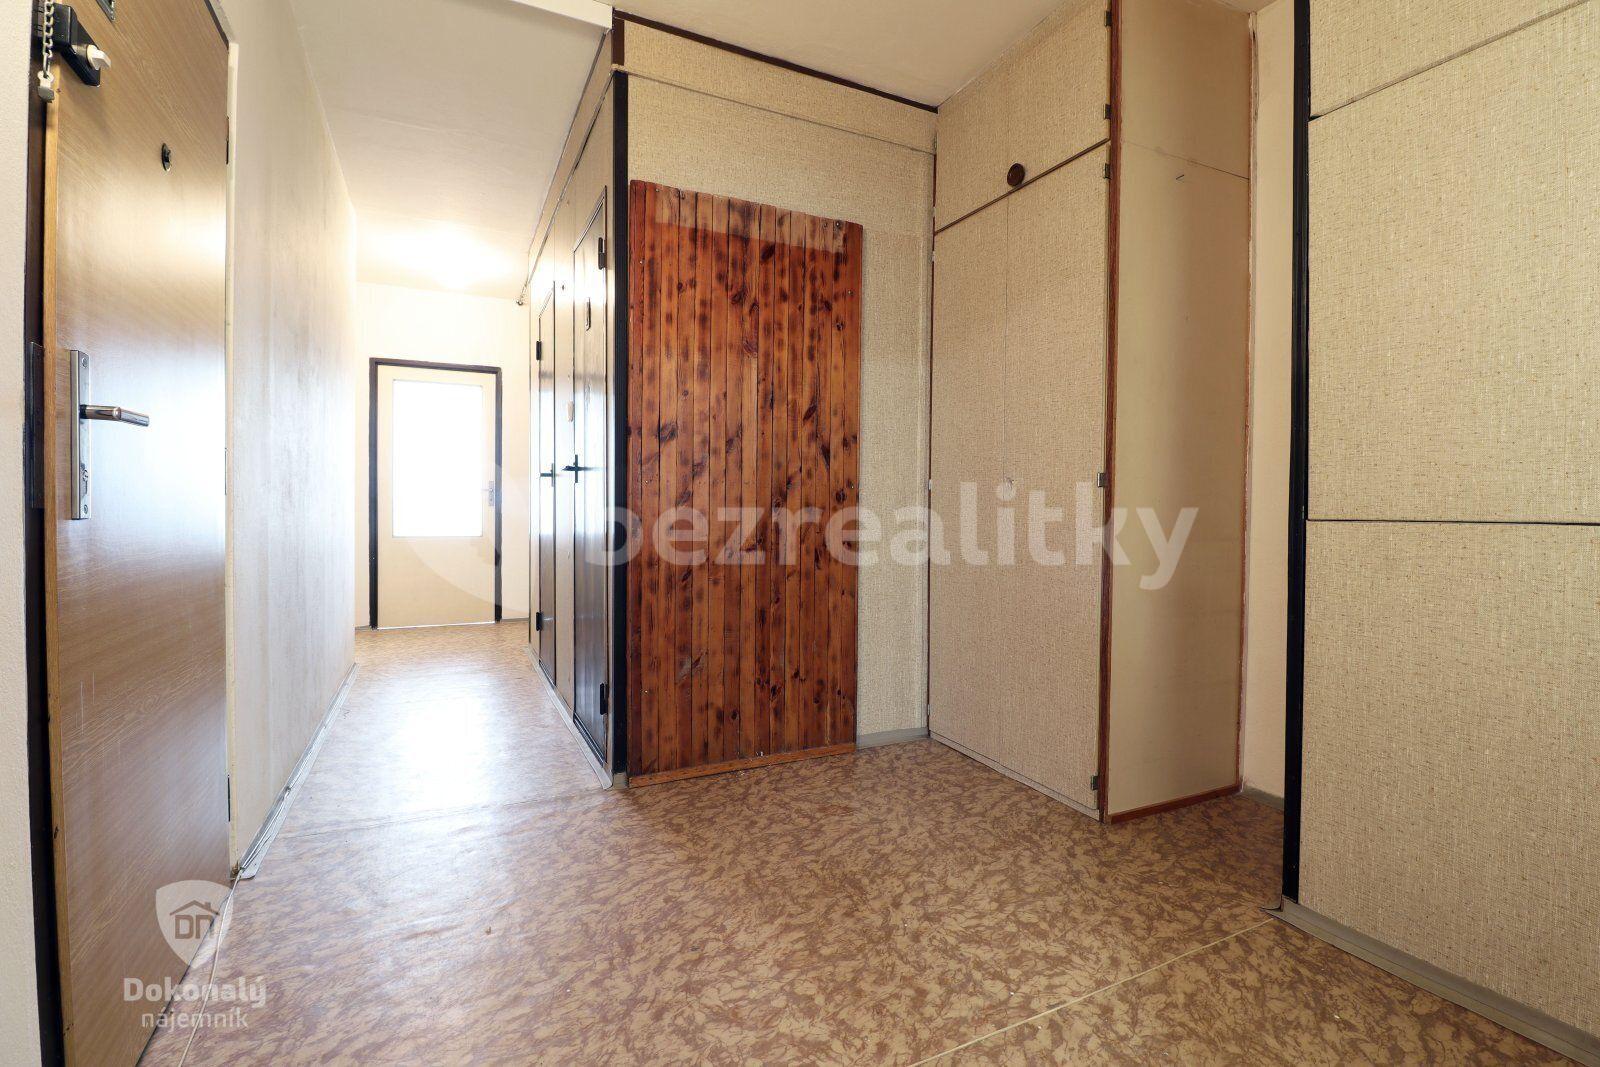 3 bedroom flat to rent, 76 m², Kurzova, Prague, Prague